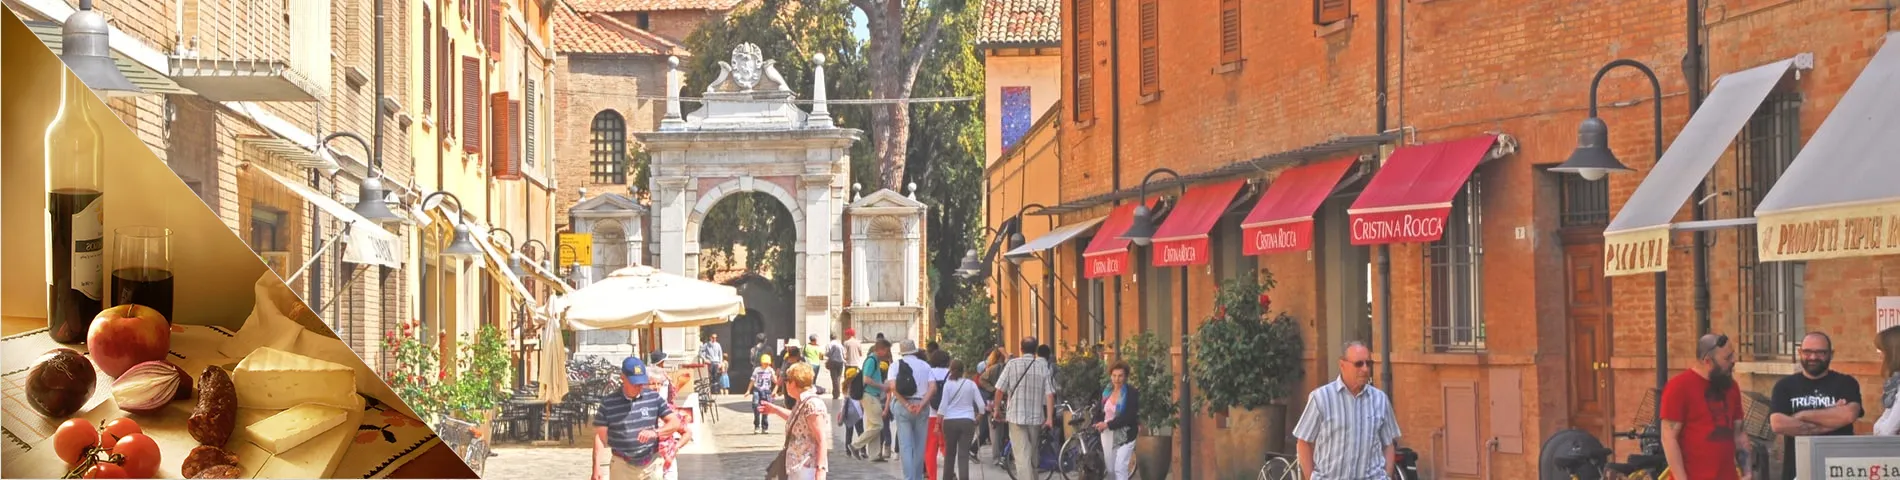 Ravenna - Italia & kulttuuri